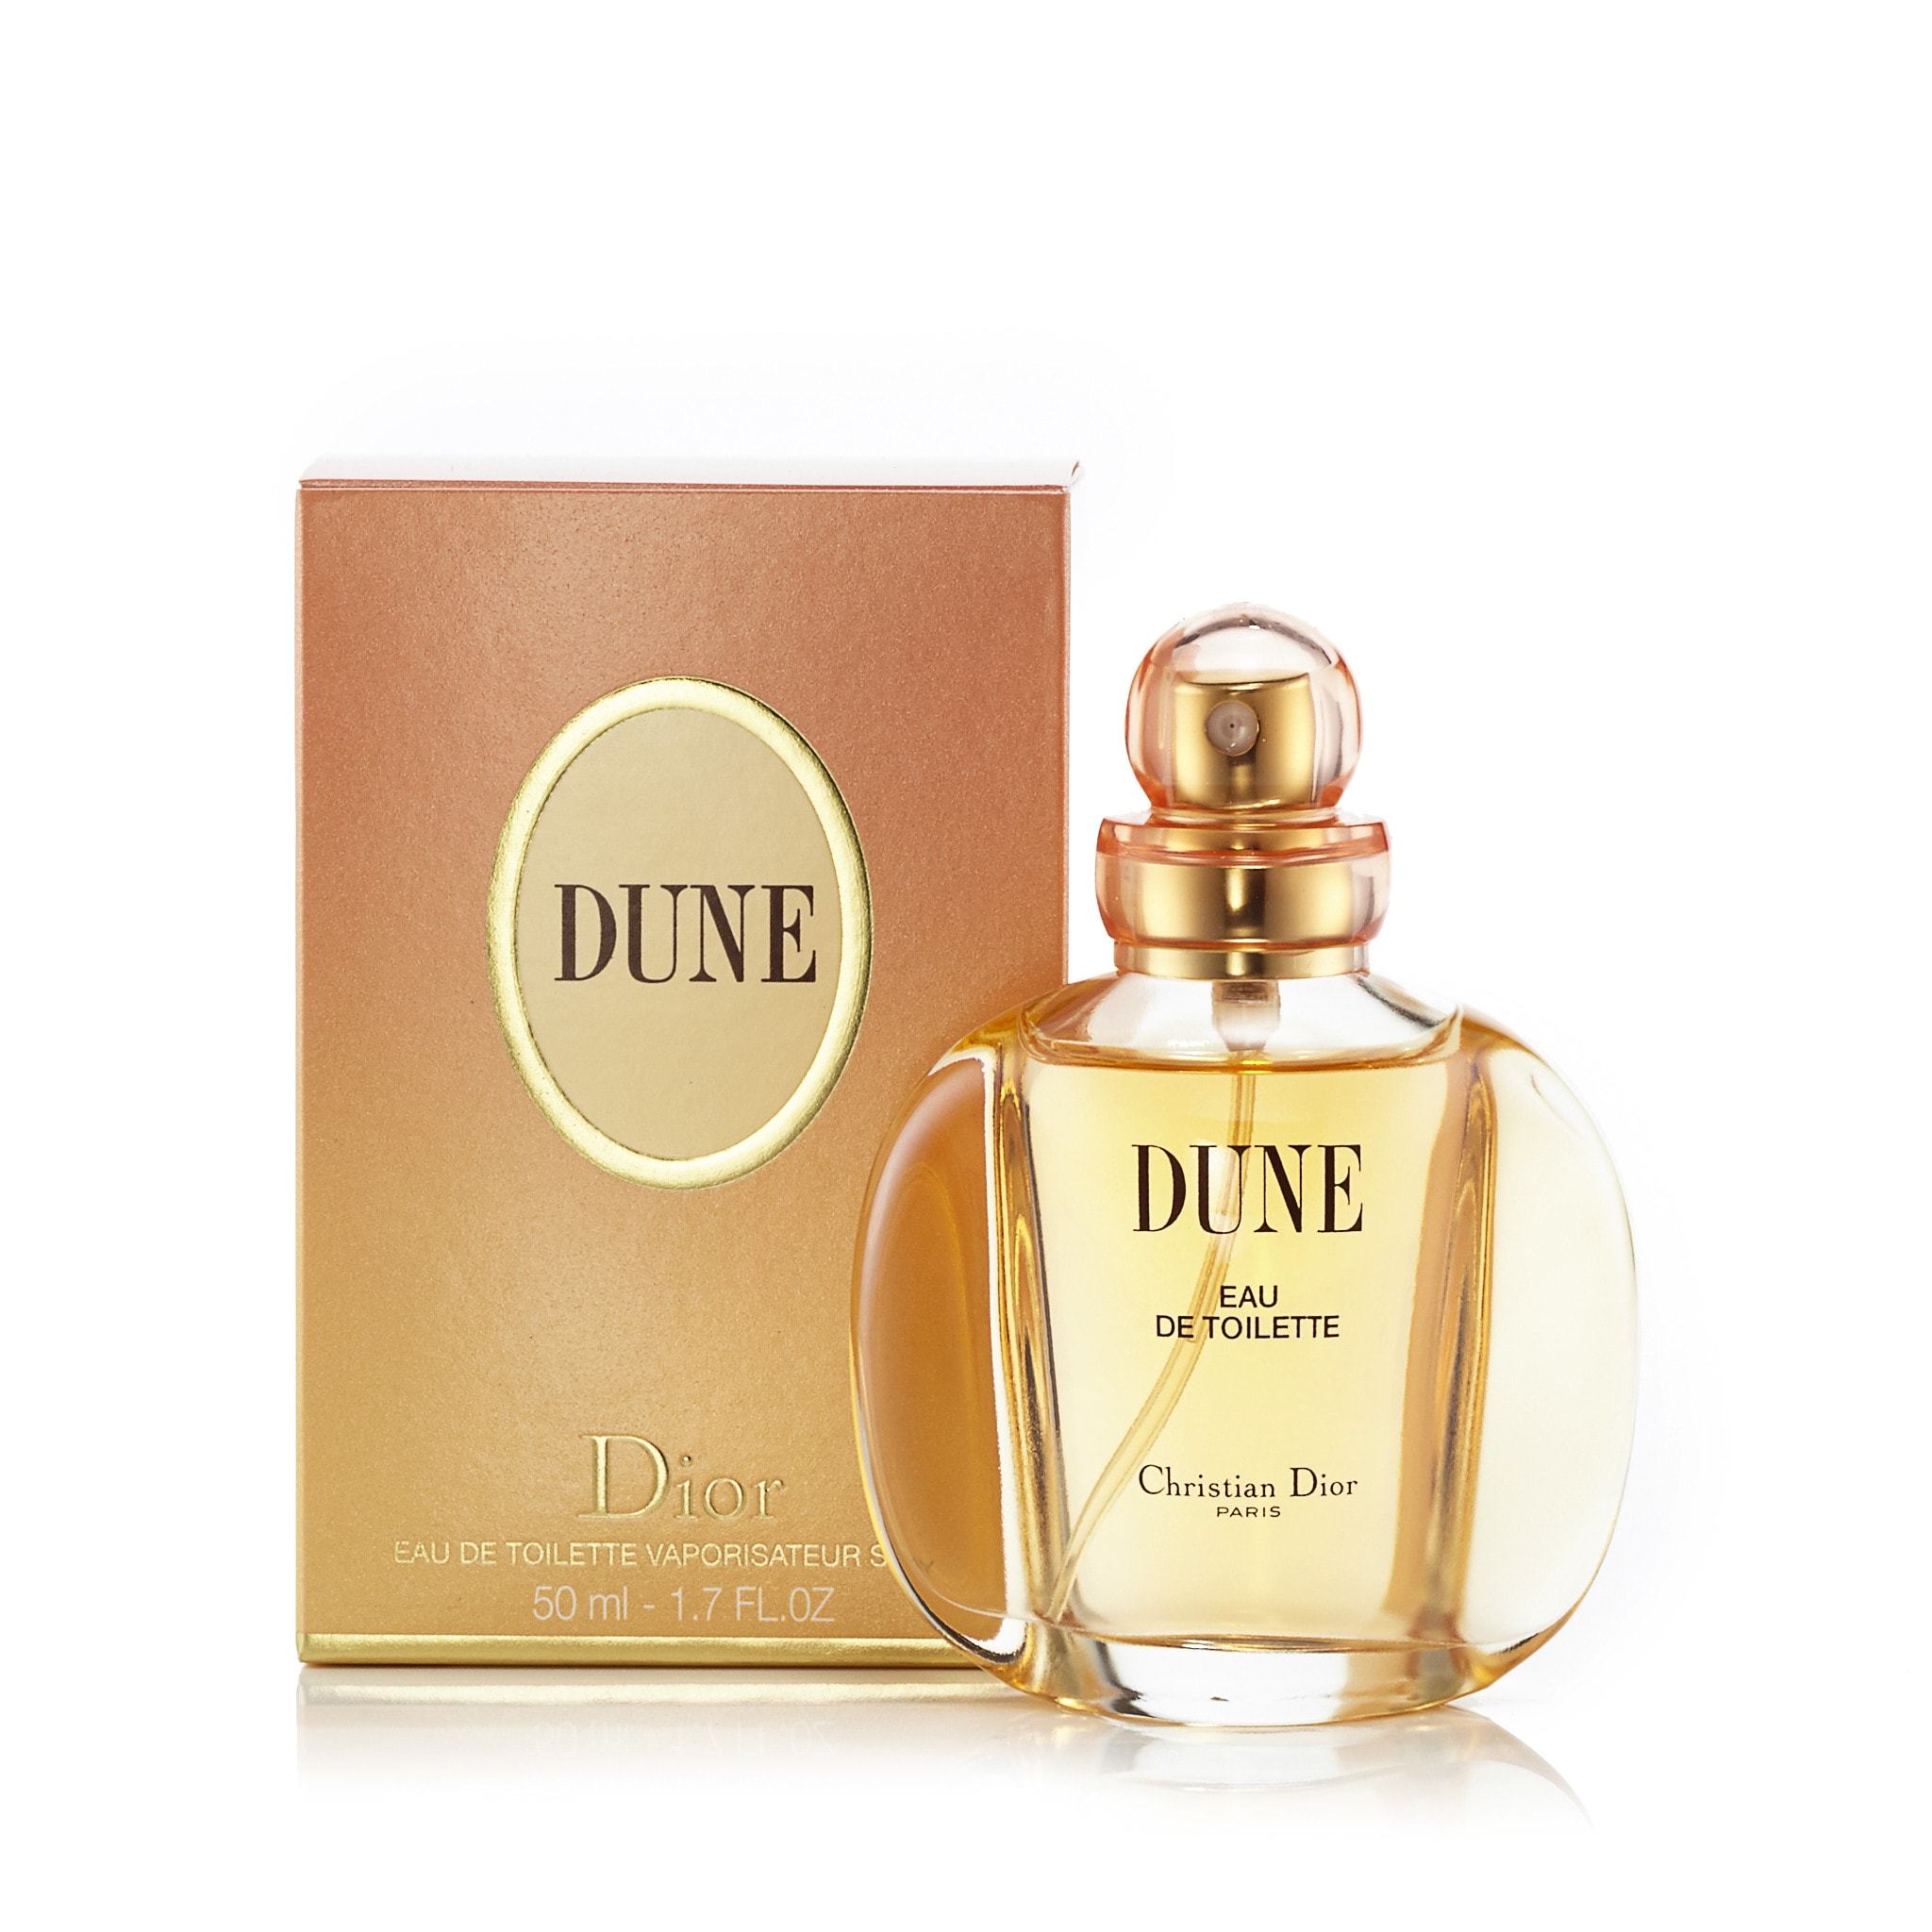 Mua nước hoa nữ Dior Dune For Women chính hãng Dior ở TPHCM  SỈ LẺ NƯỚC HOA